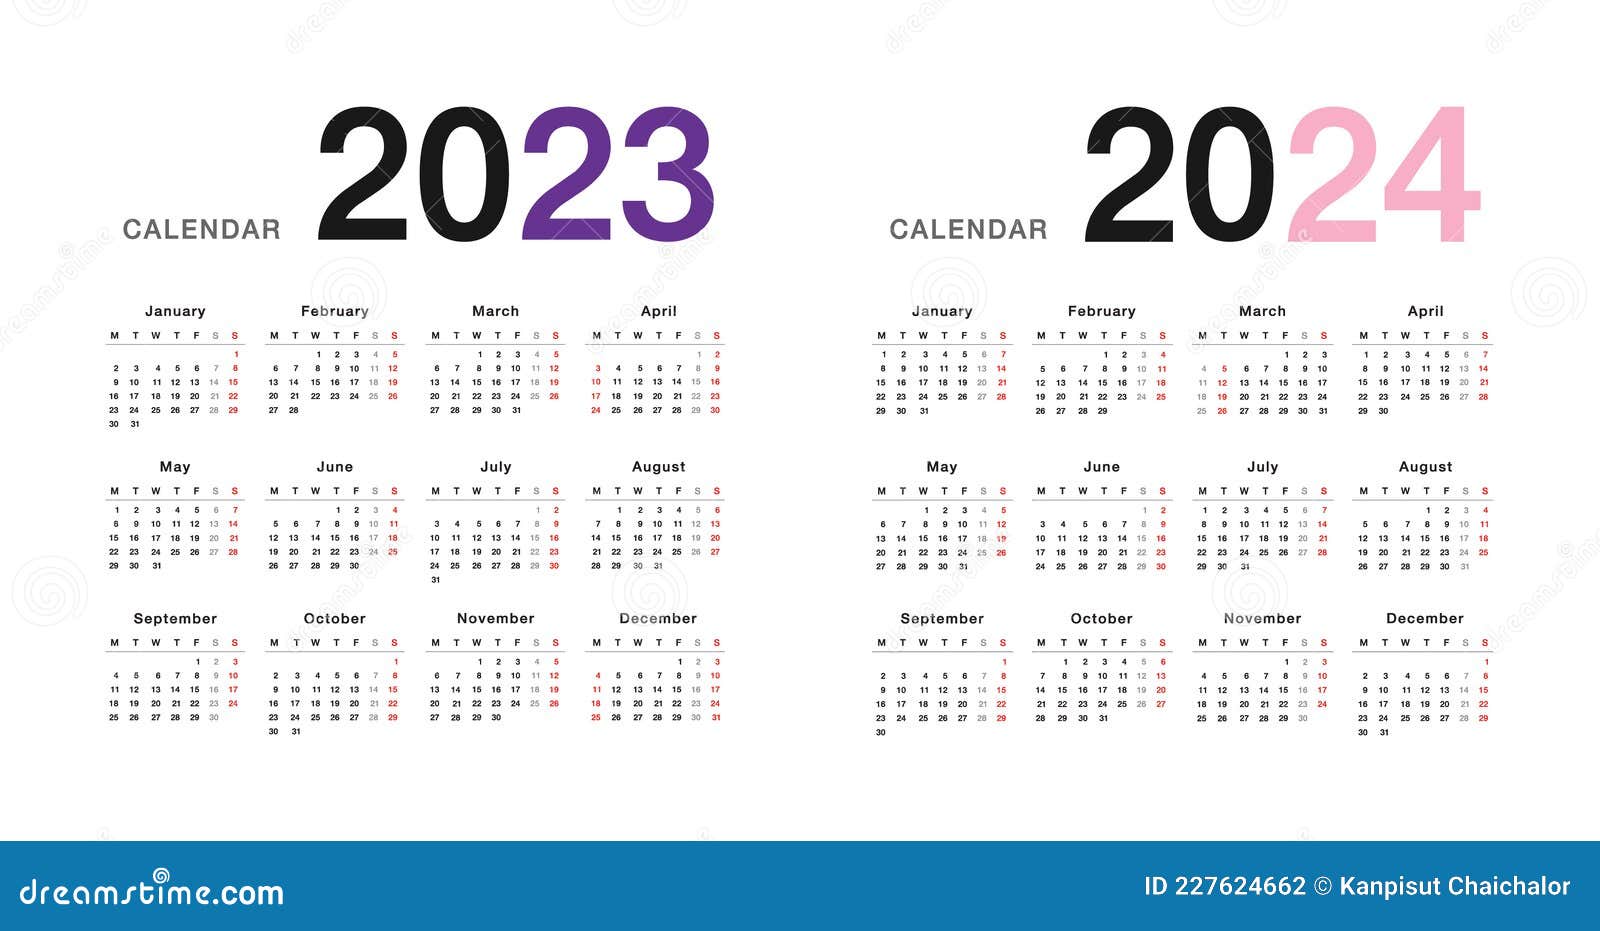 Календарь на 2024 год эксель